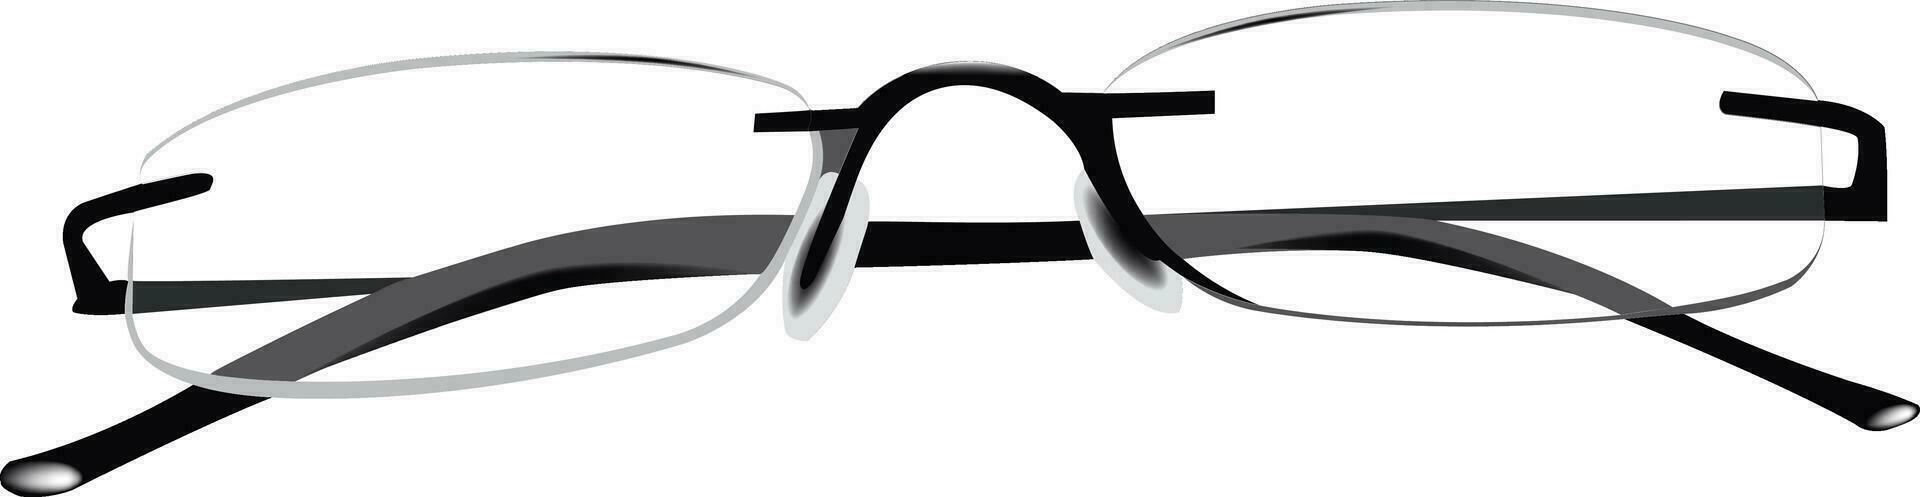 transparente los anteojos y Gafas de sol para hombres y mujer vector